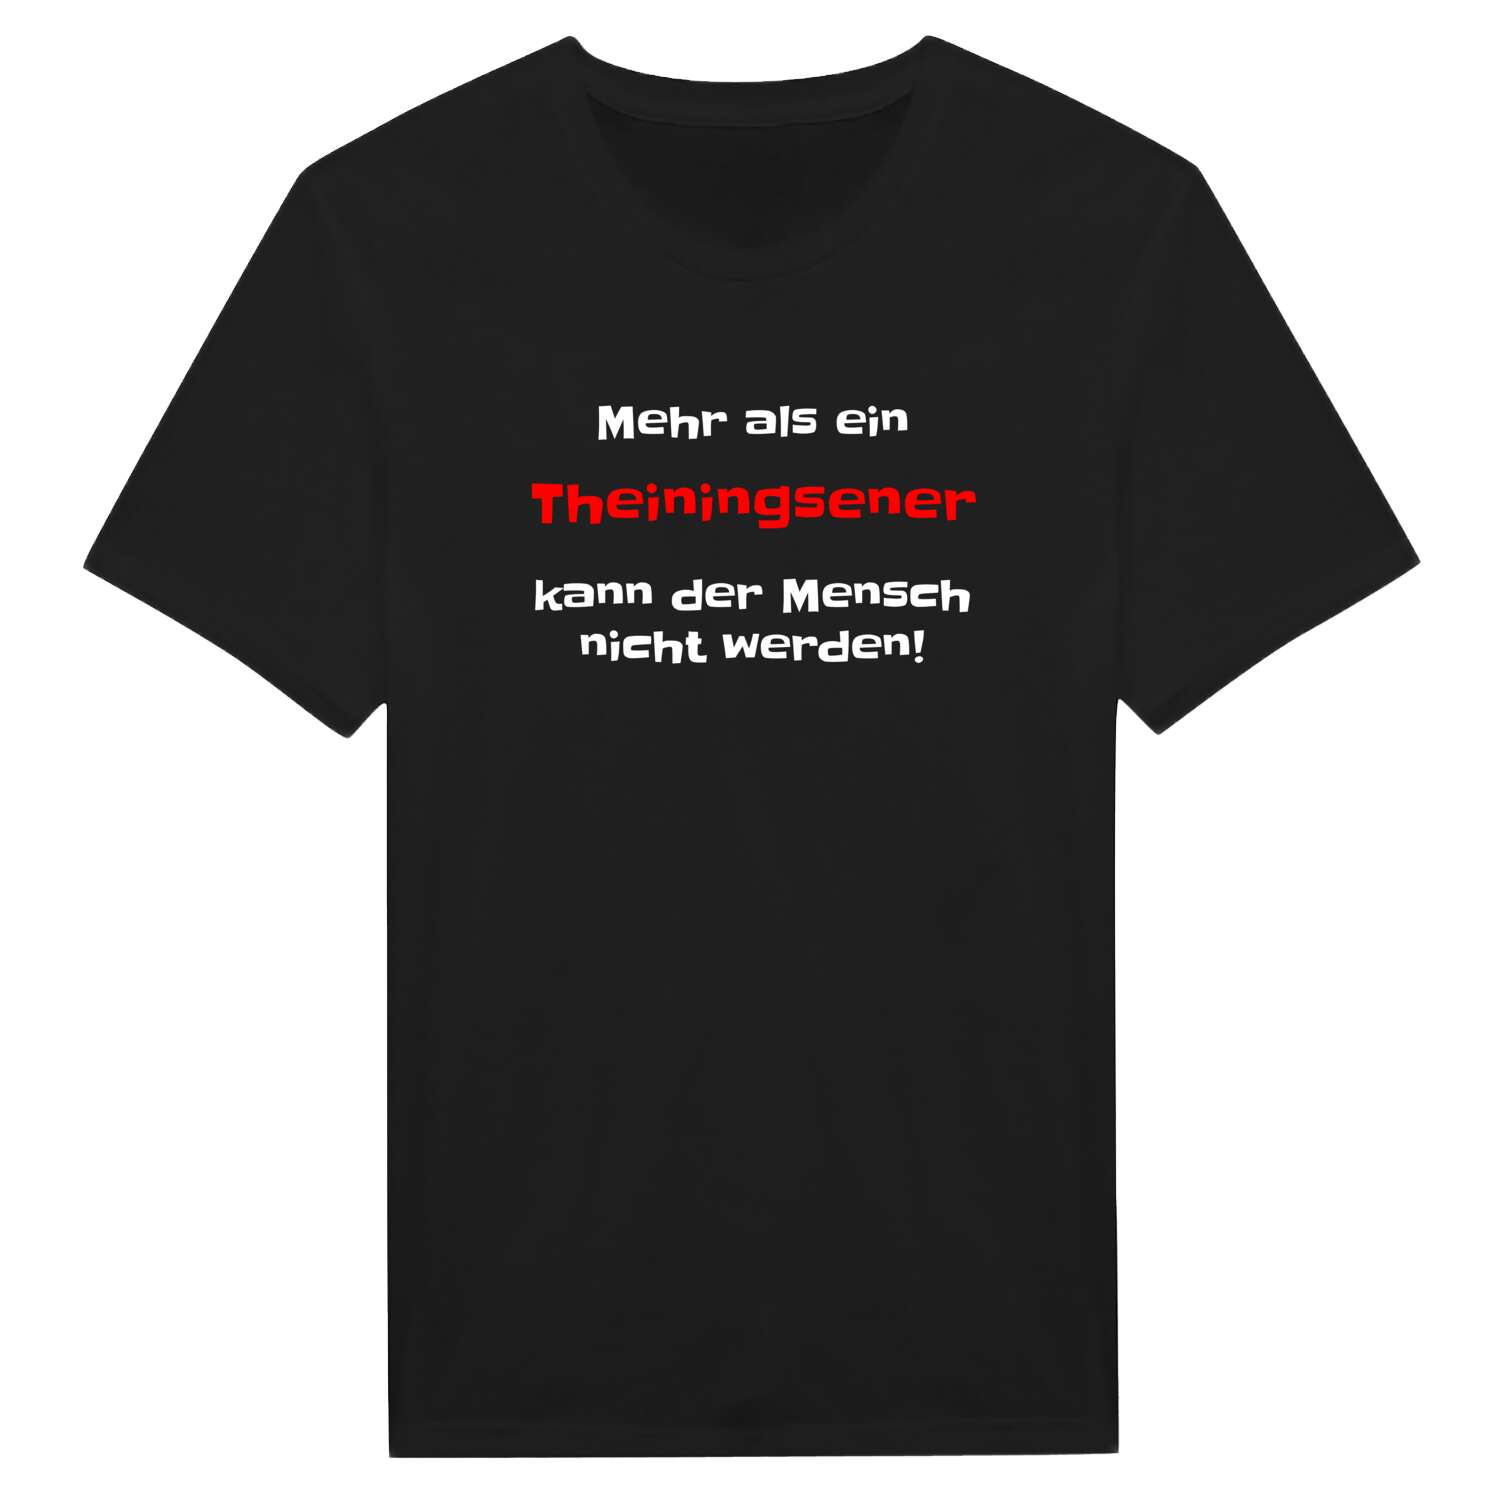 Theiningsen T-Shirt »Mehr als ein«